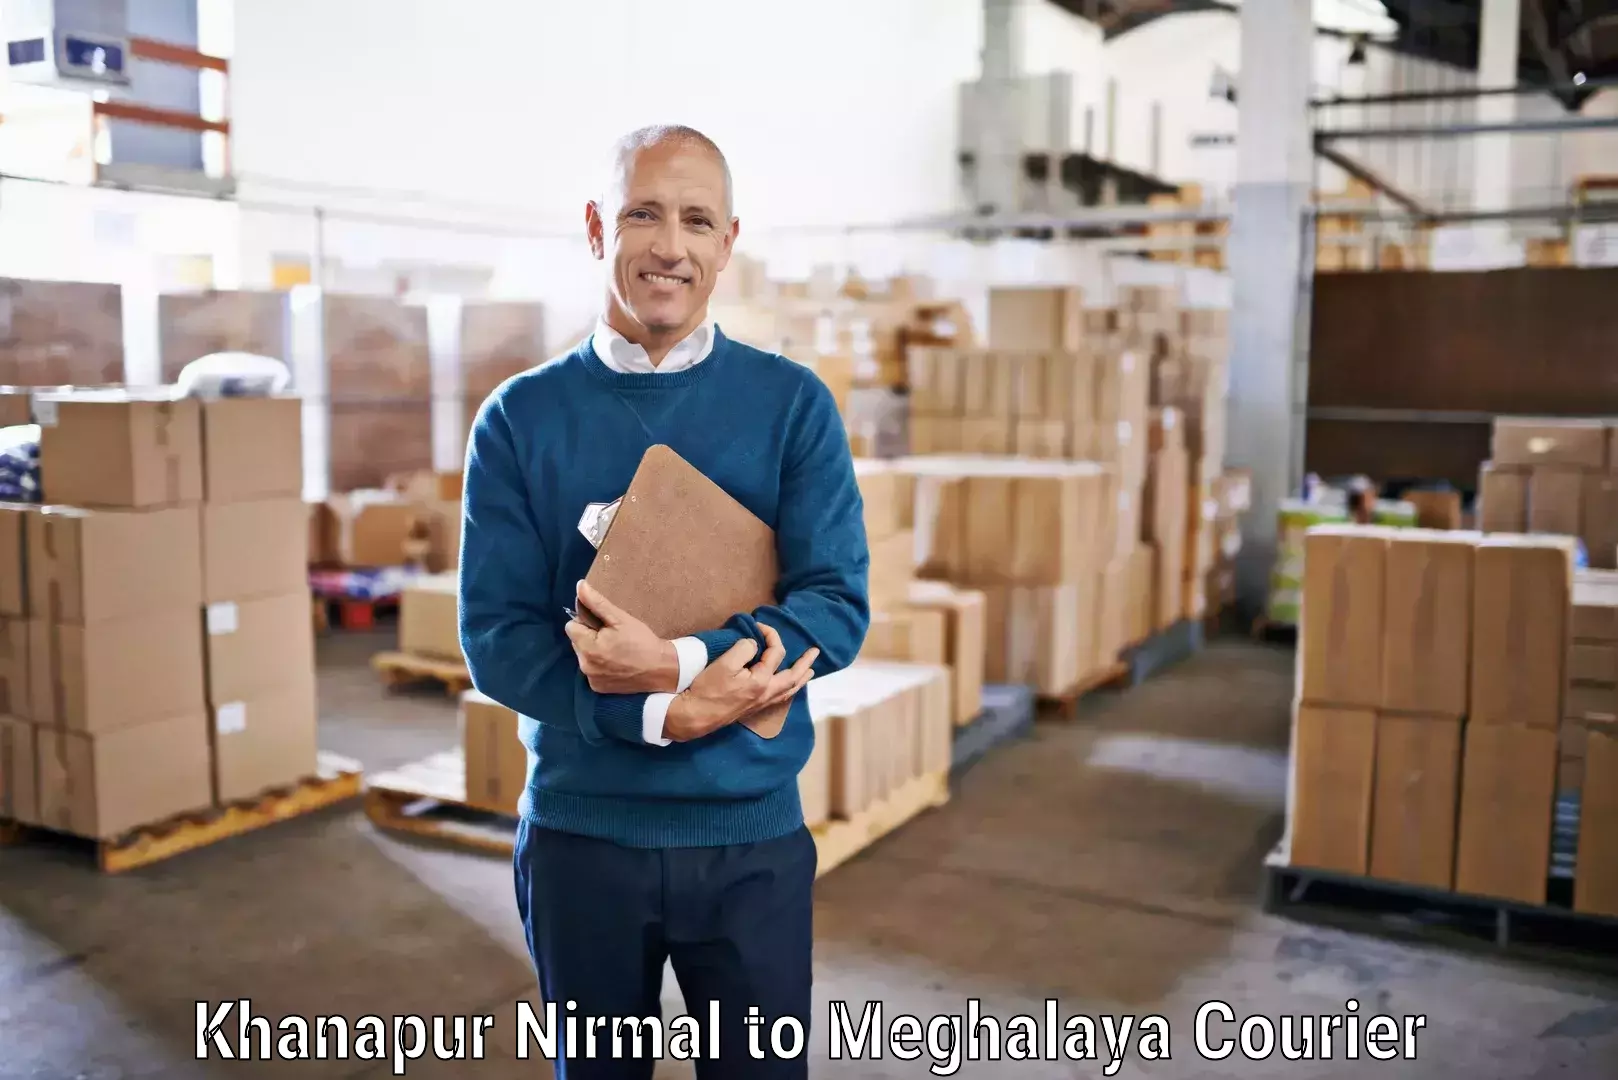 Flexible shipping options Khanapur Nirmal to Shillong